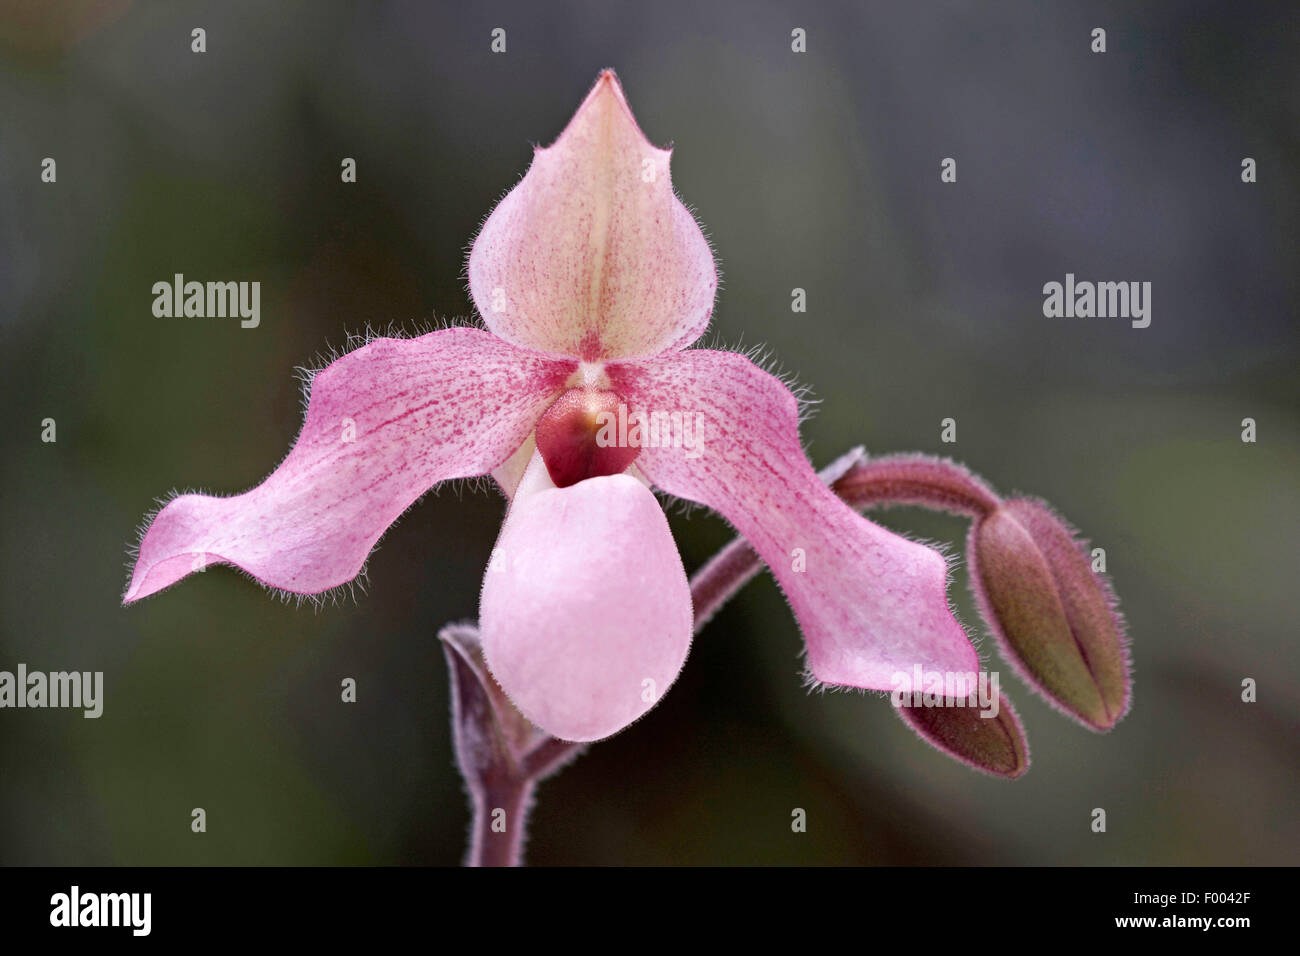 Paphiopedilum (Paphiopedilum Dellophyllum, Paphiopedilum 'Dellophyllum'), flowers Stock Photo